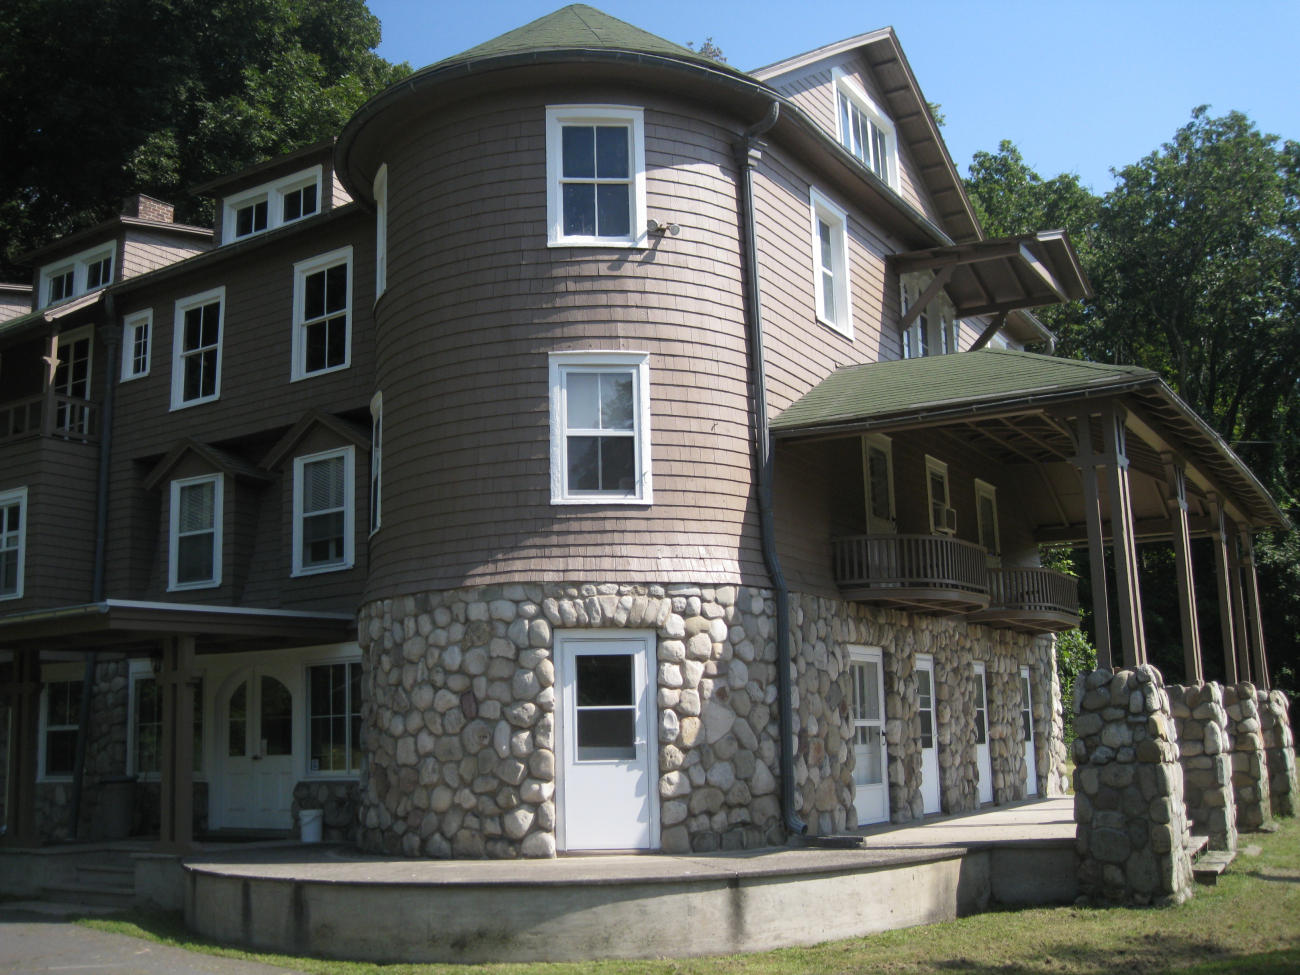 Arisbe, home of Charles Sanders Peirce in Milford, Pennsylvania